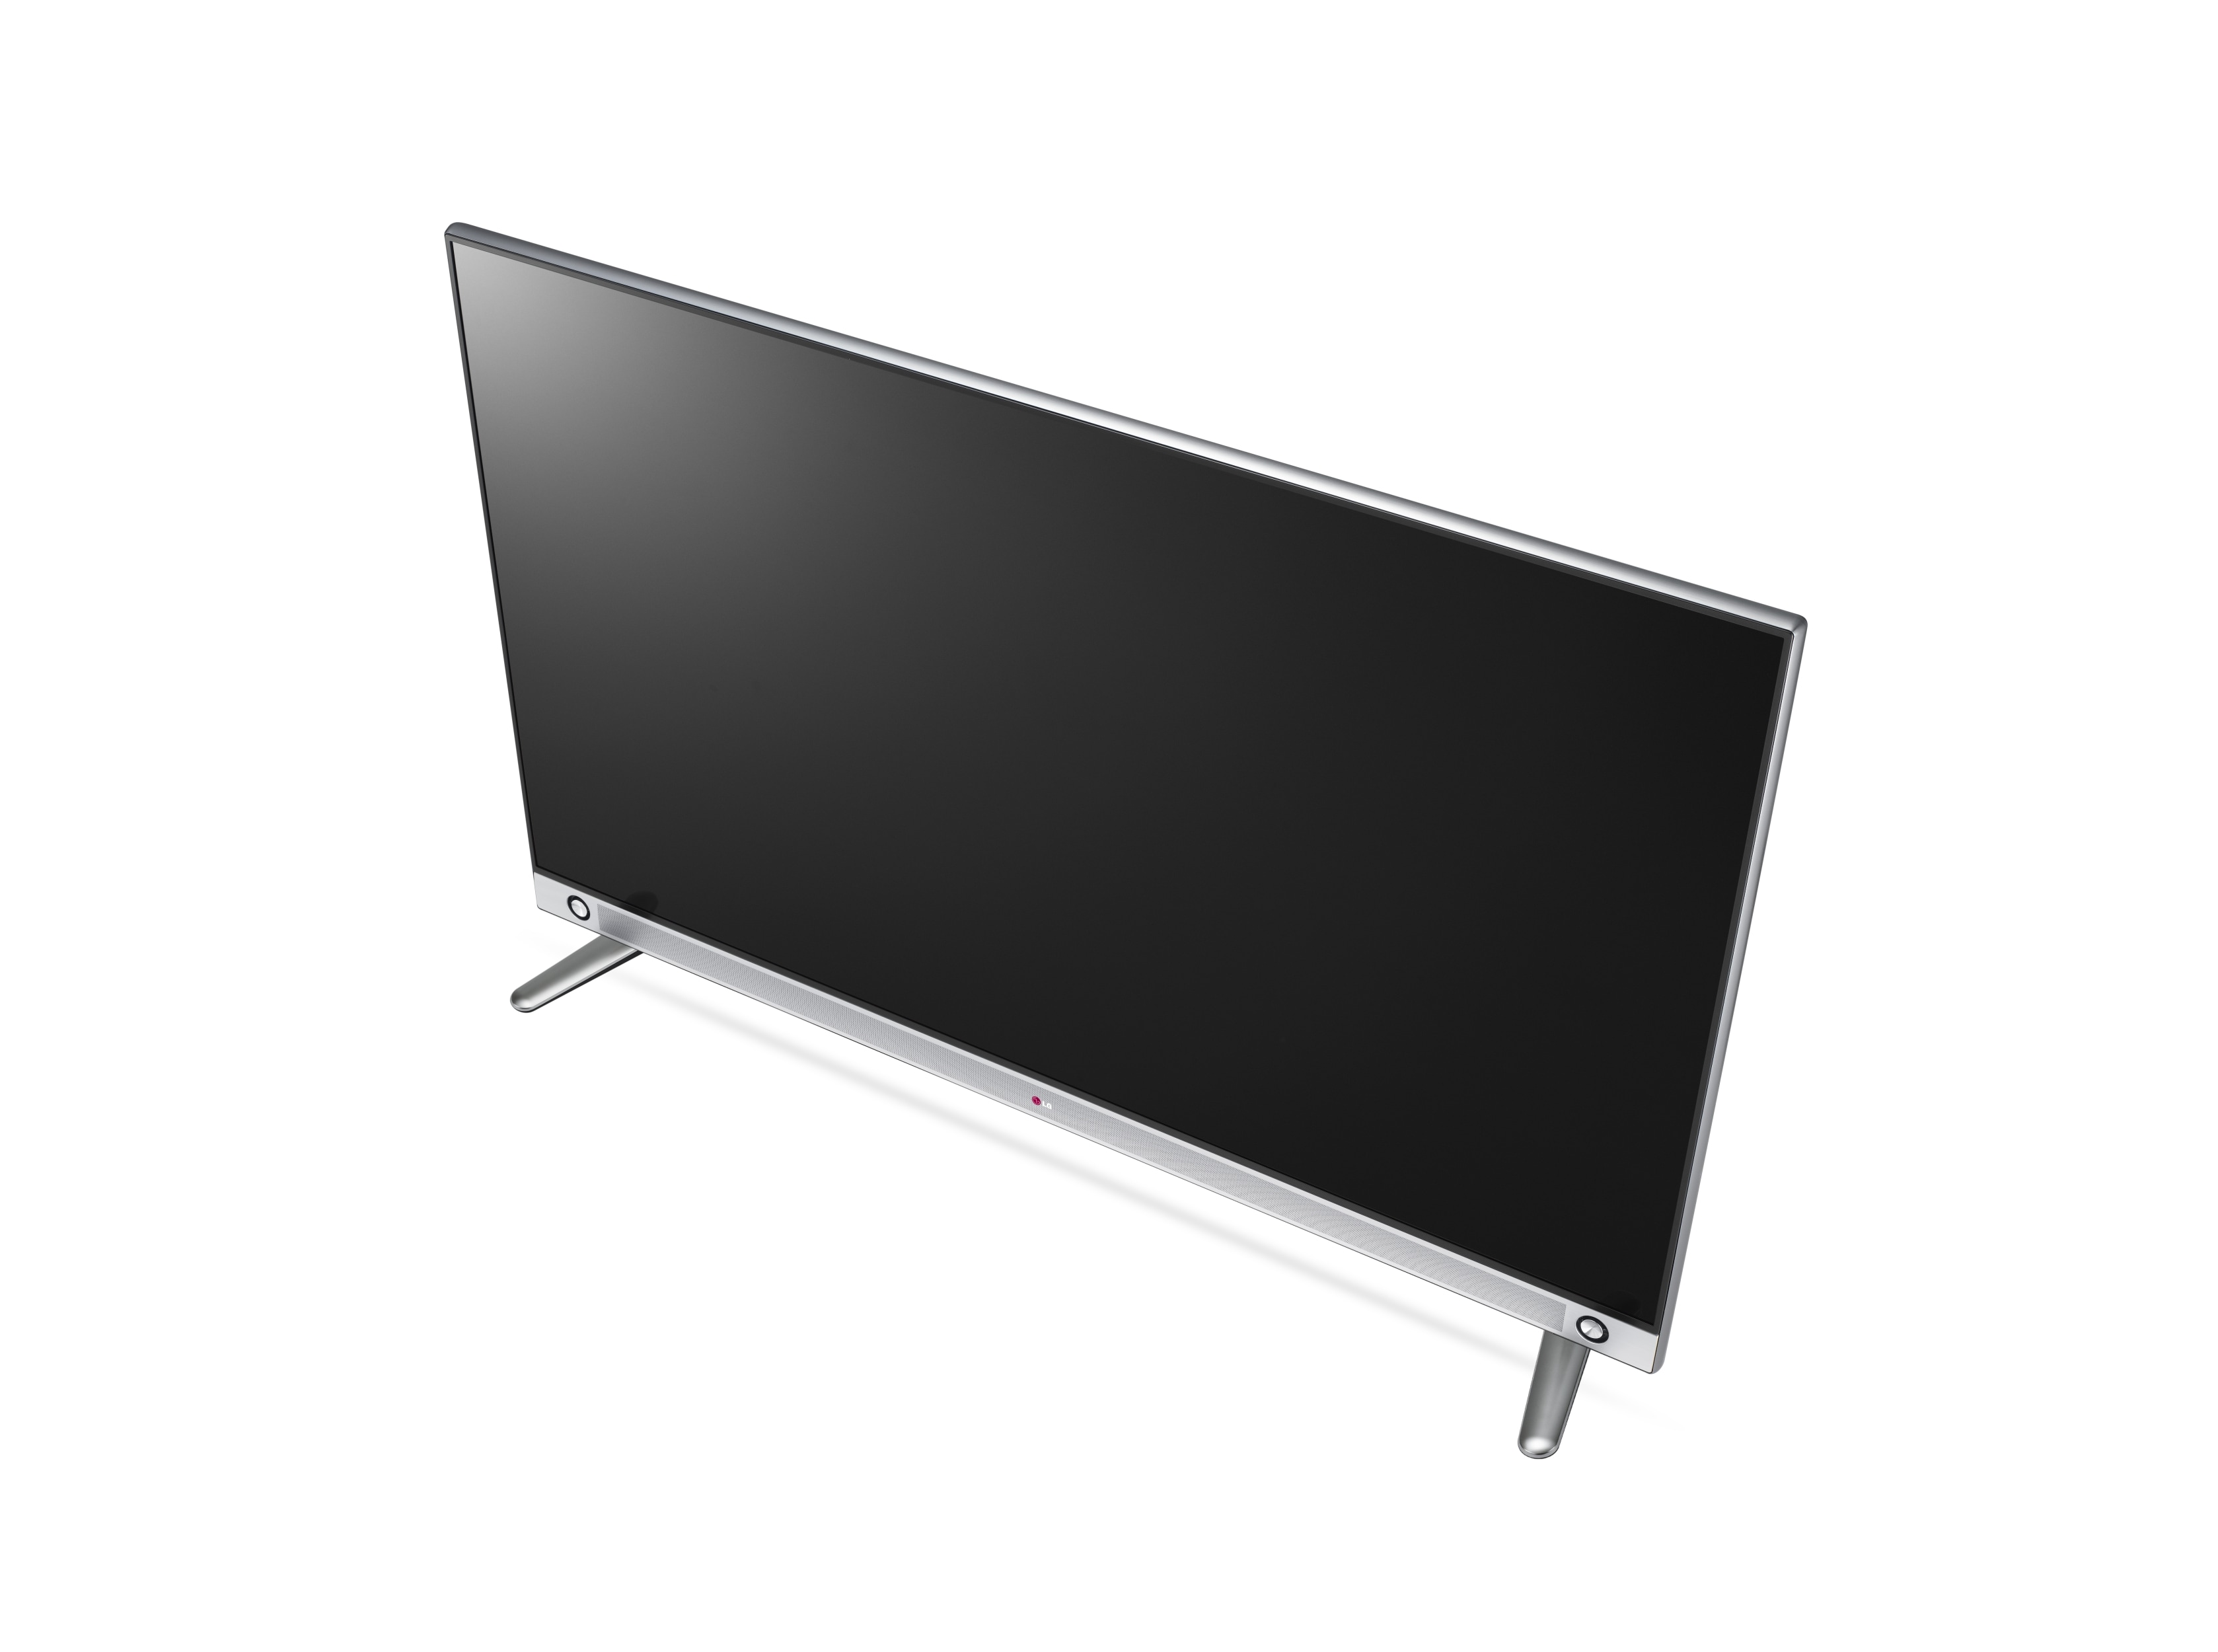 Téléviseur de 240 Hz à résolution 4K ultra HD avec écran de classe 55 po et  téléviseur Smart (diagonale de 54,6 po) - 55LA9650